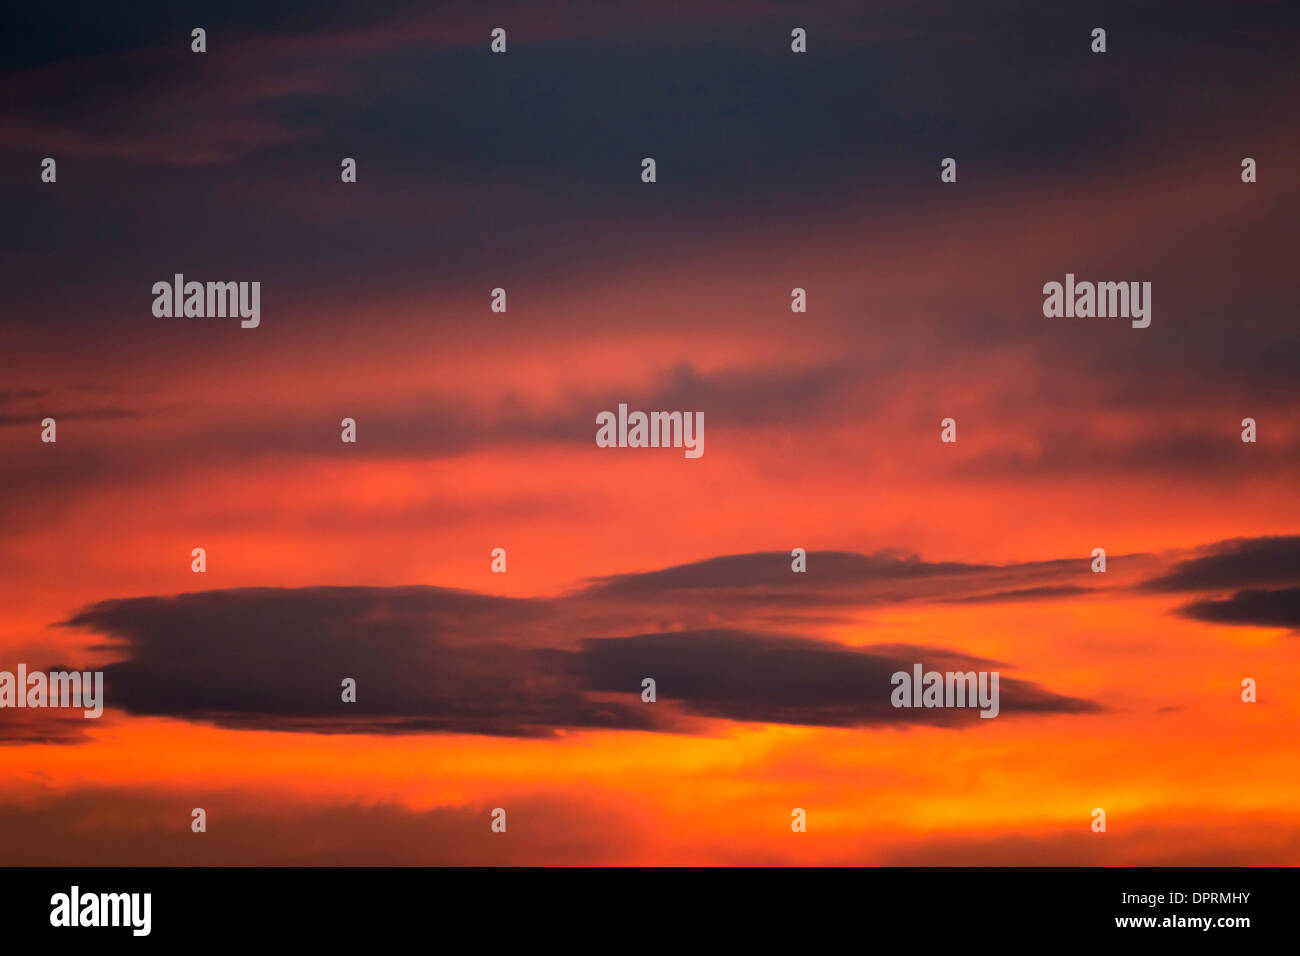 dunkle Wolke auf Roter Himmel - Zwielicht - Sonnenuntergang Farben Stockfoto